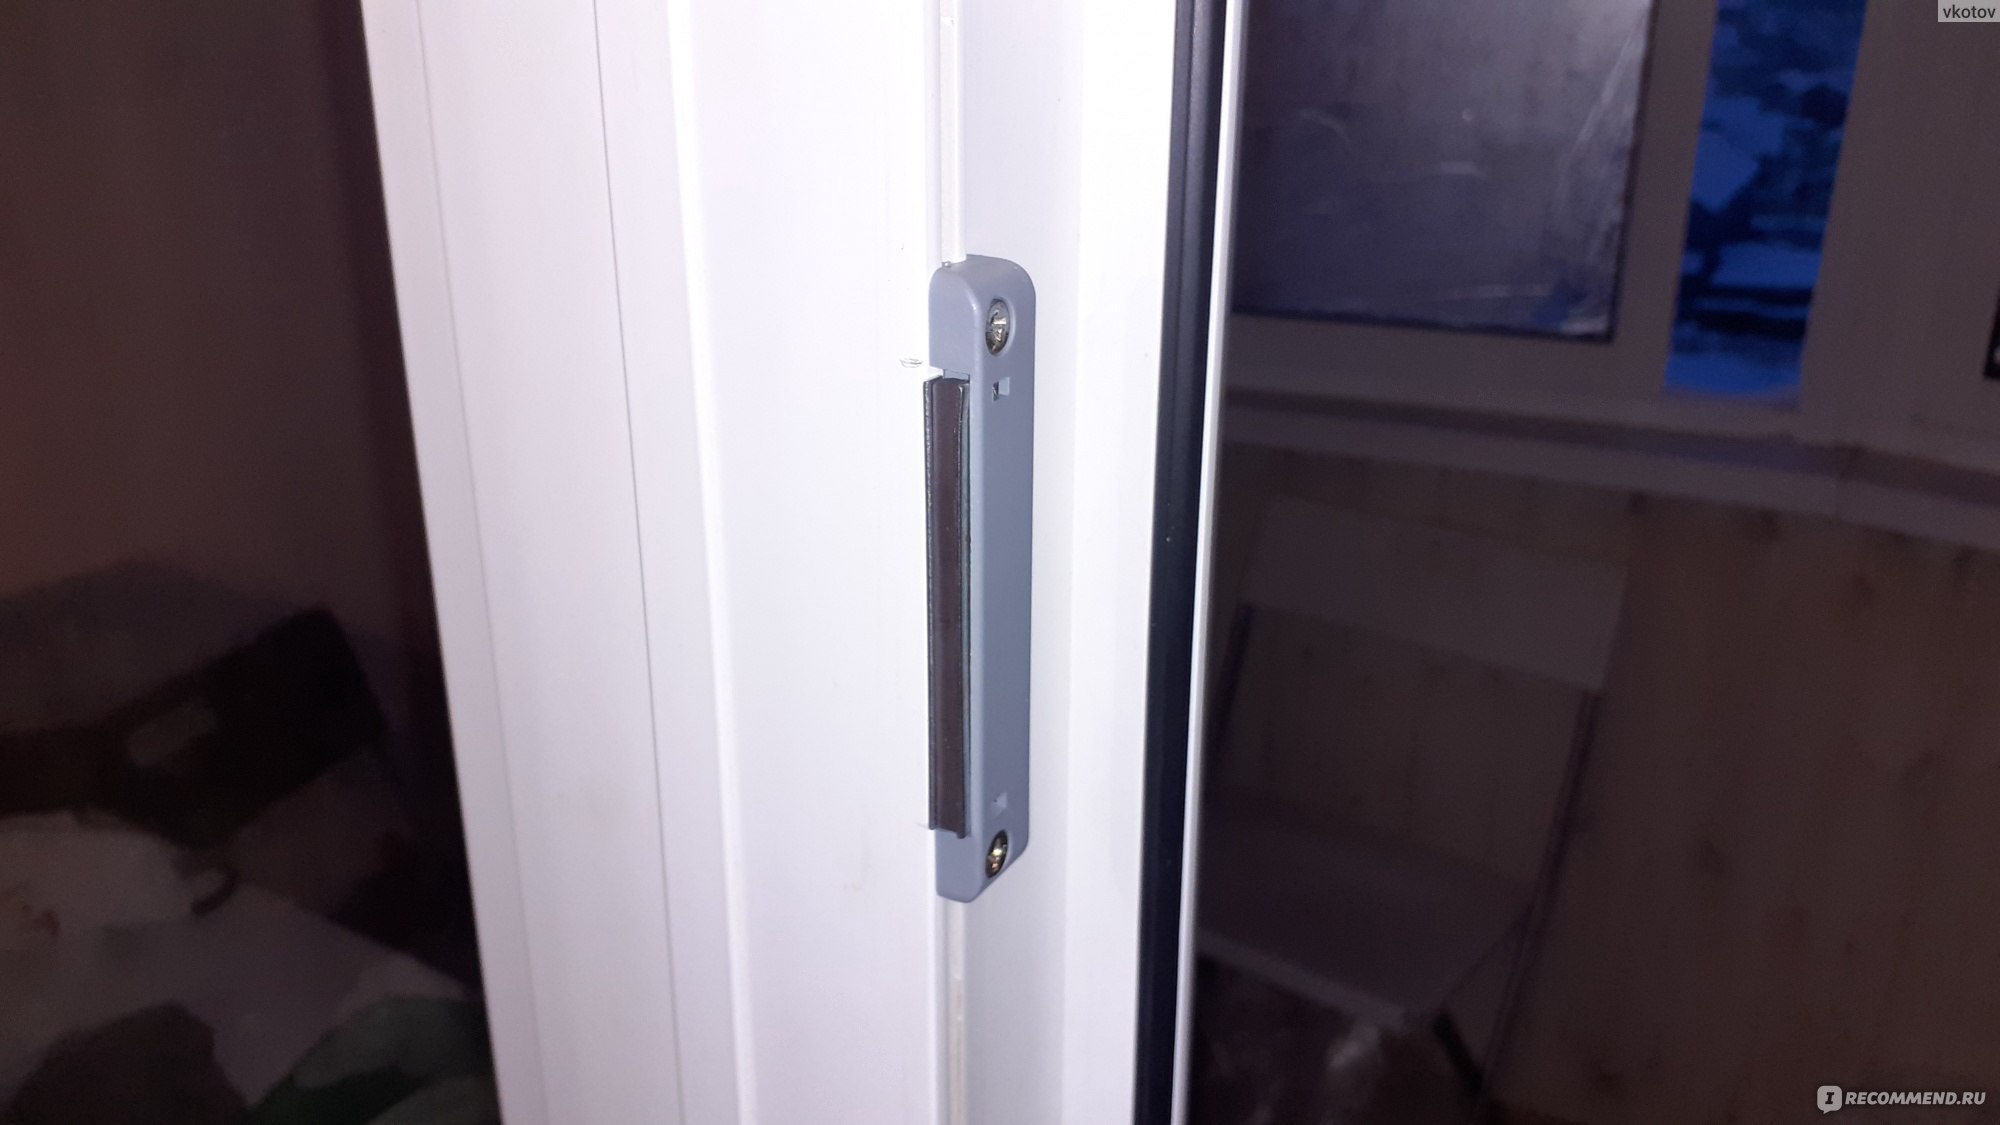 Монтаж магнитной защелки на балконную дверь